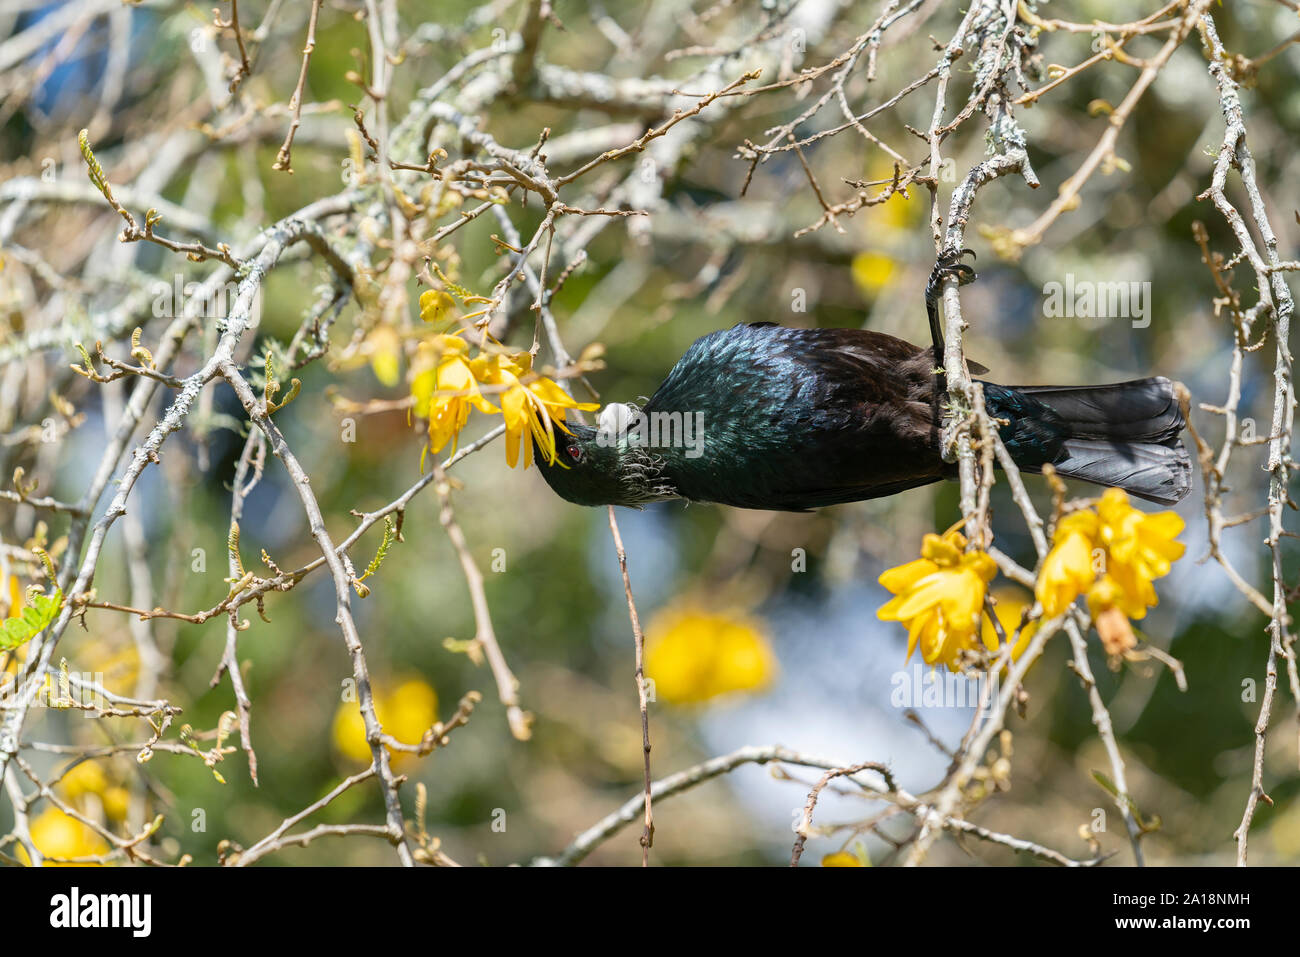 La Nouvelle Zélande, d'oiseaux indigènes de la Tui se nourrissant de nectar de fleur jaune arbre kowhai. Banque D'Images